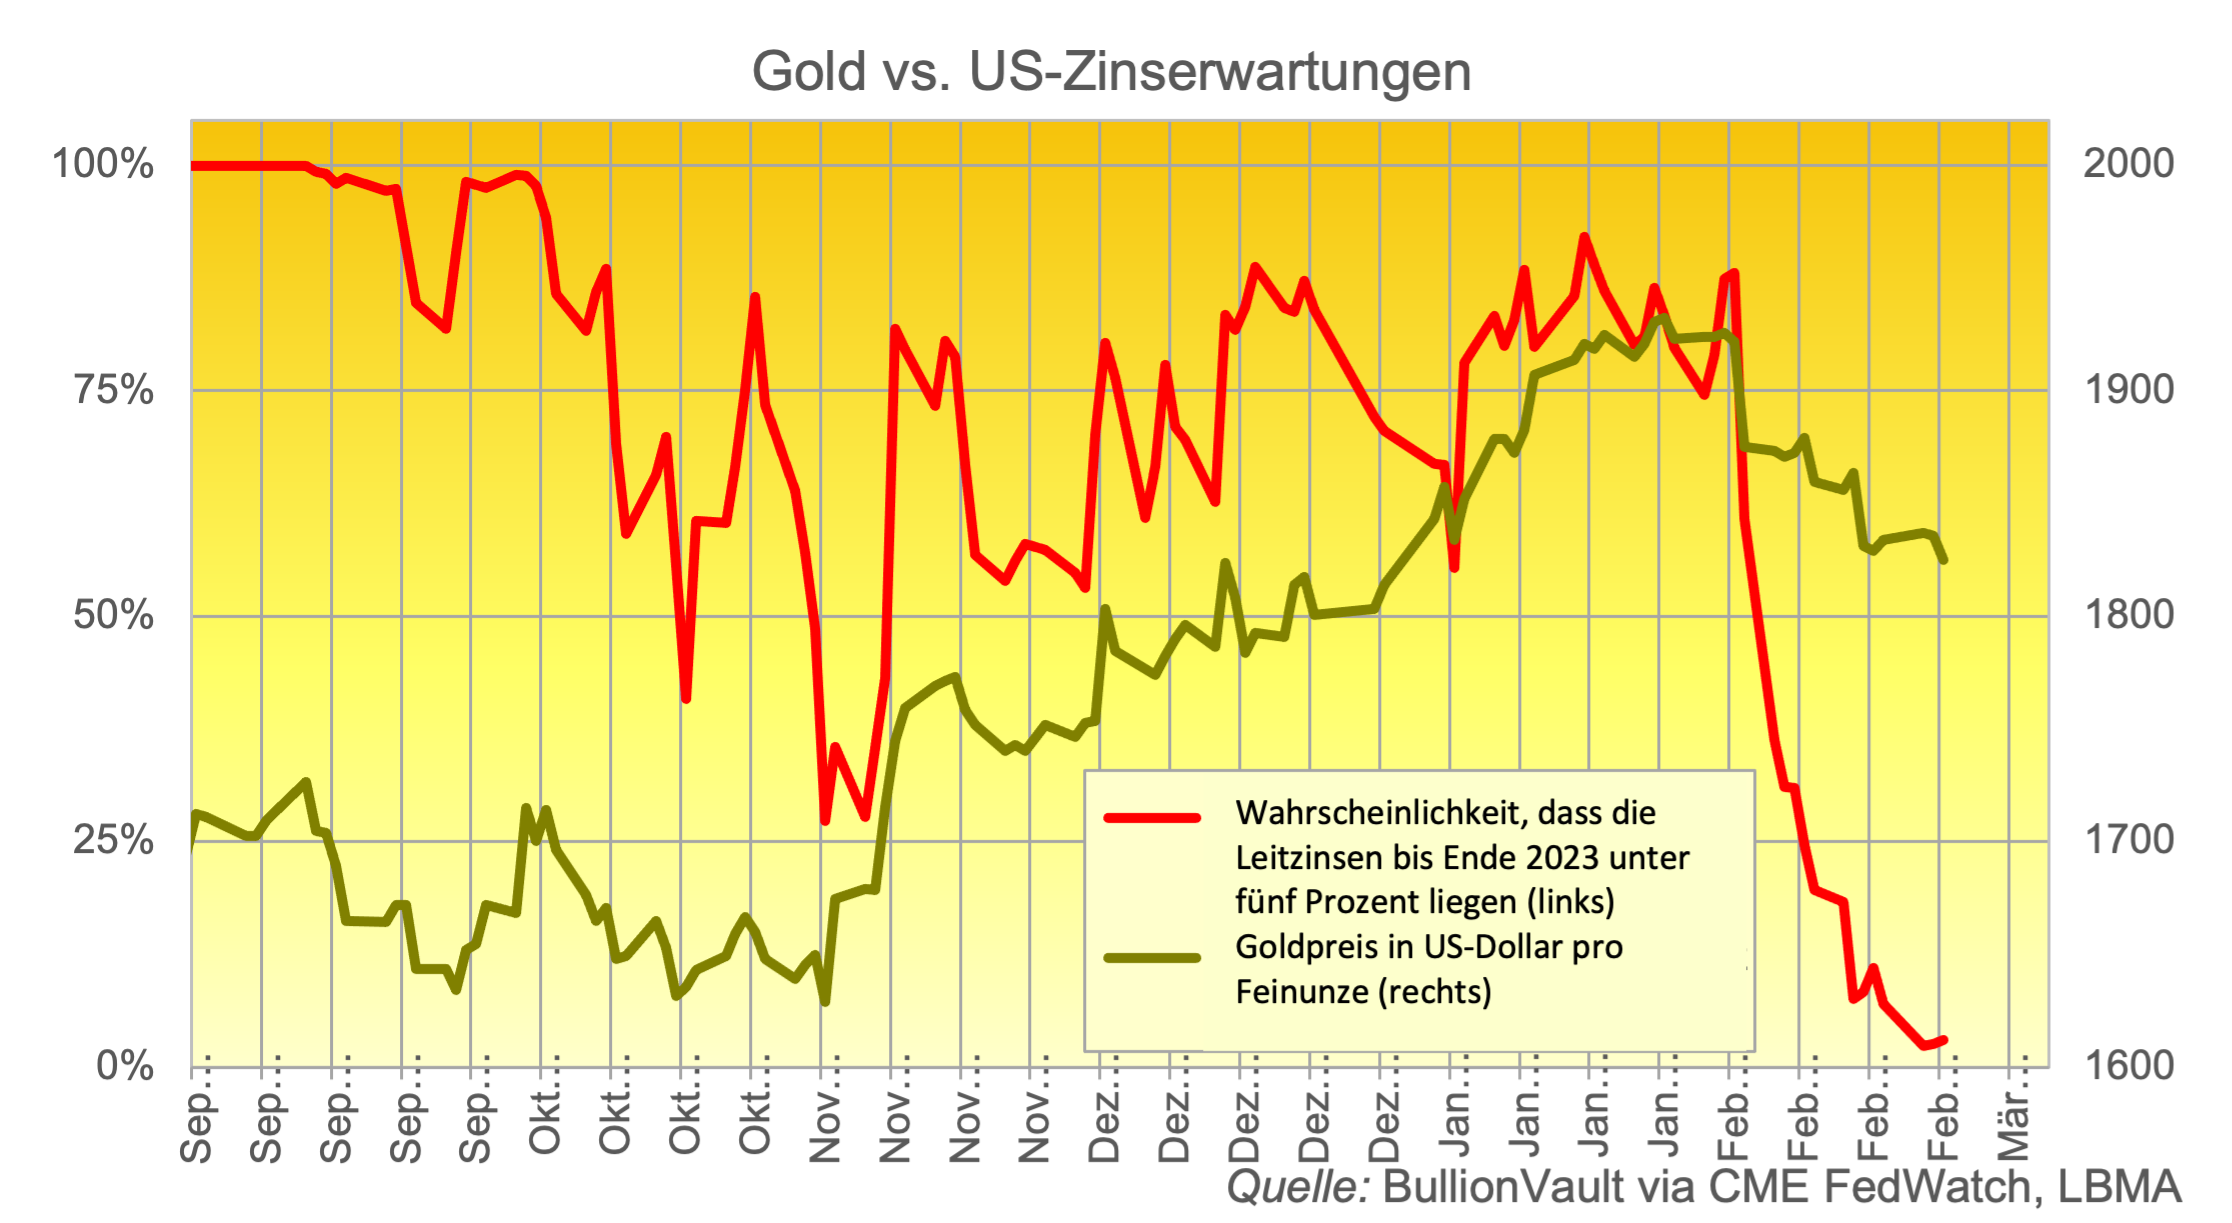 Gold vs. US-Zinserwartungen 